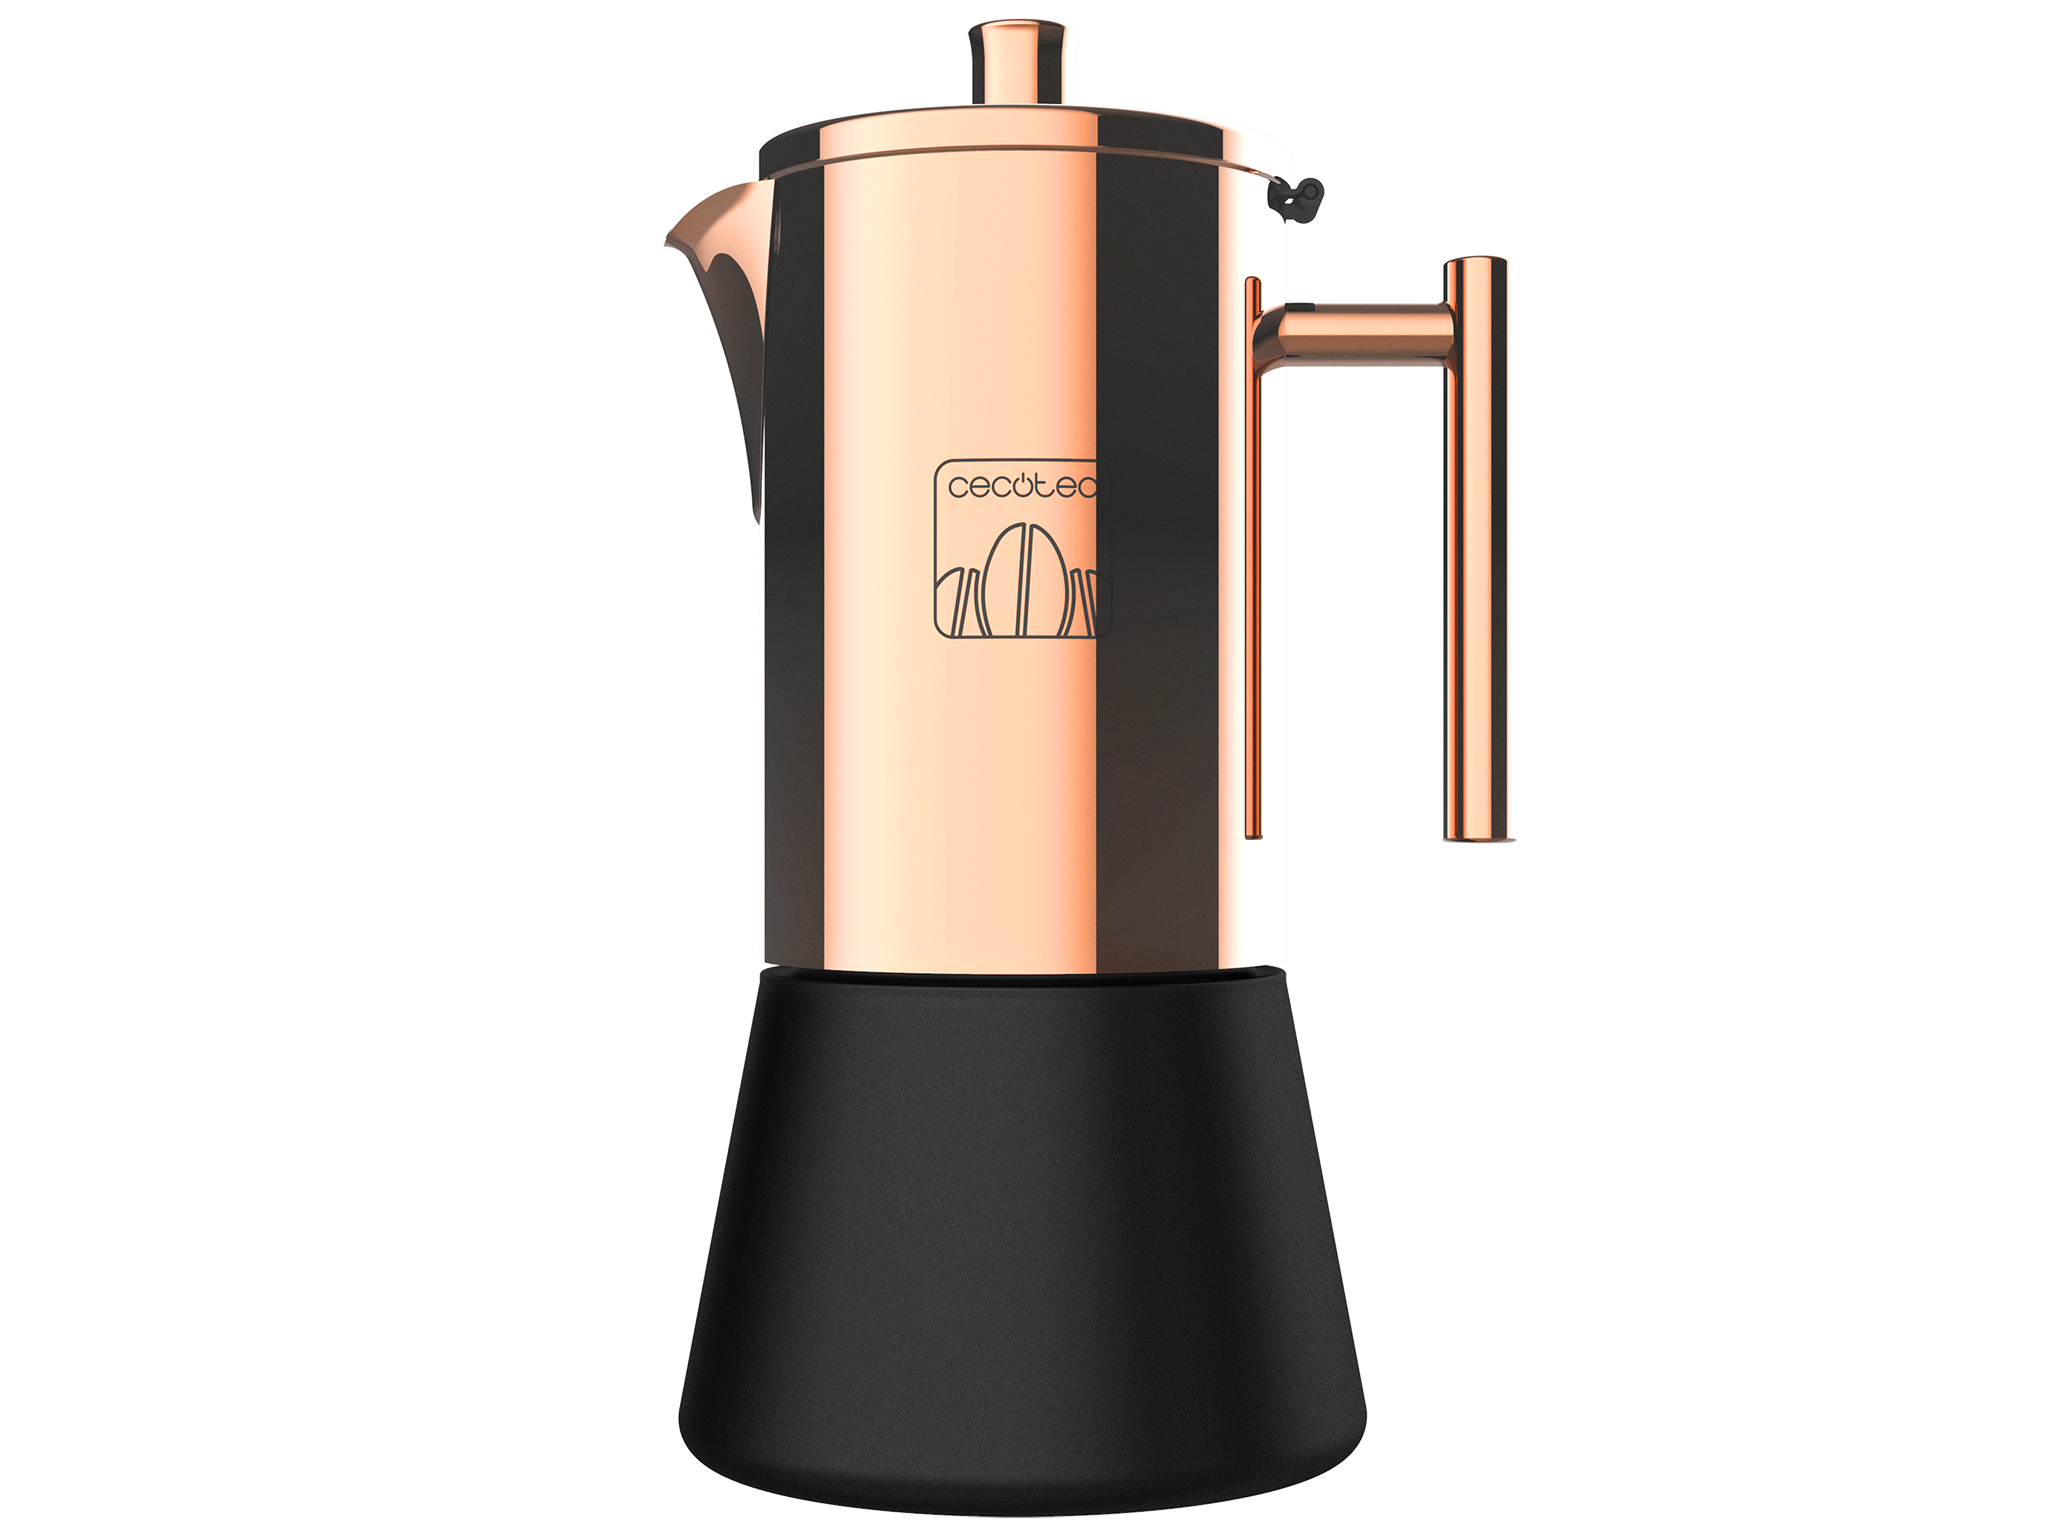 Italienische Kaffeemaschine Moking 1000. Aus Edelstahl, geeignet für Gas-, Elektro- oder Vitrokeramikkocher, elegantes Design, 10 Kaffeetassen